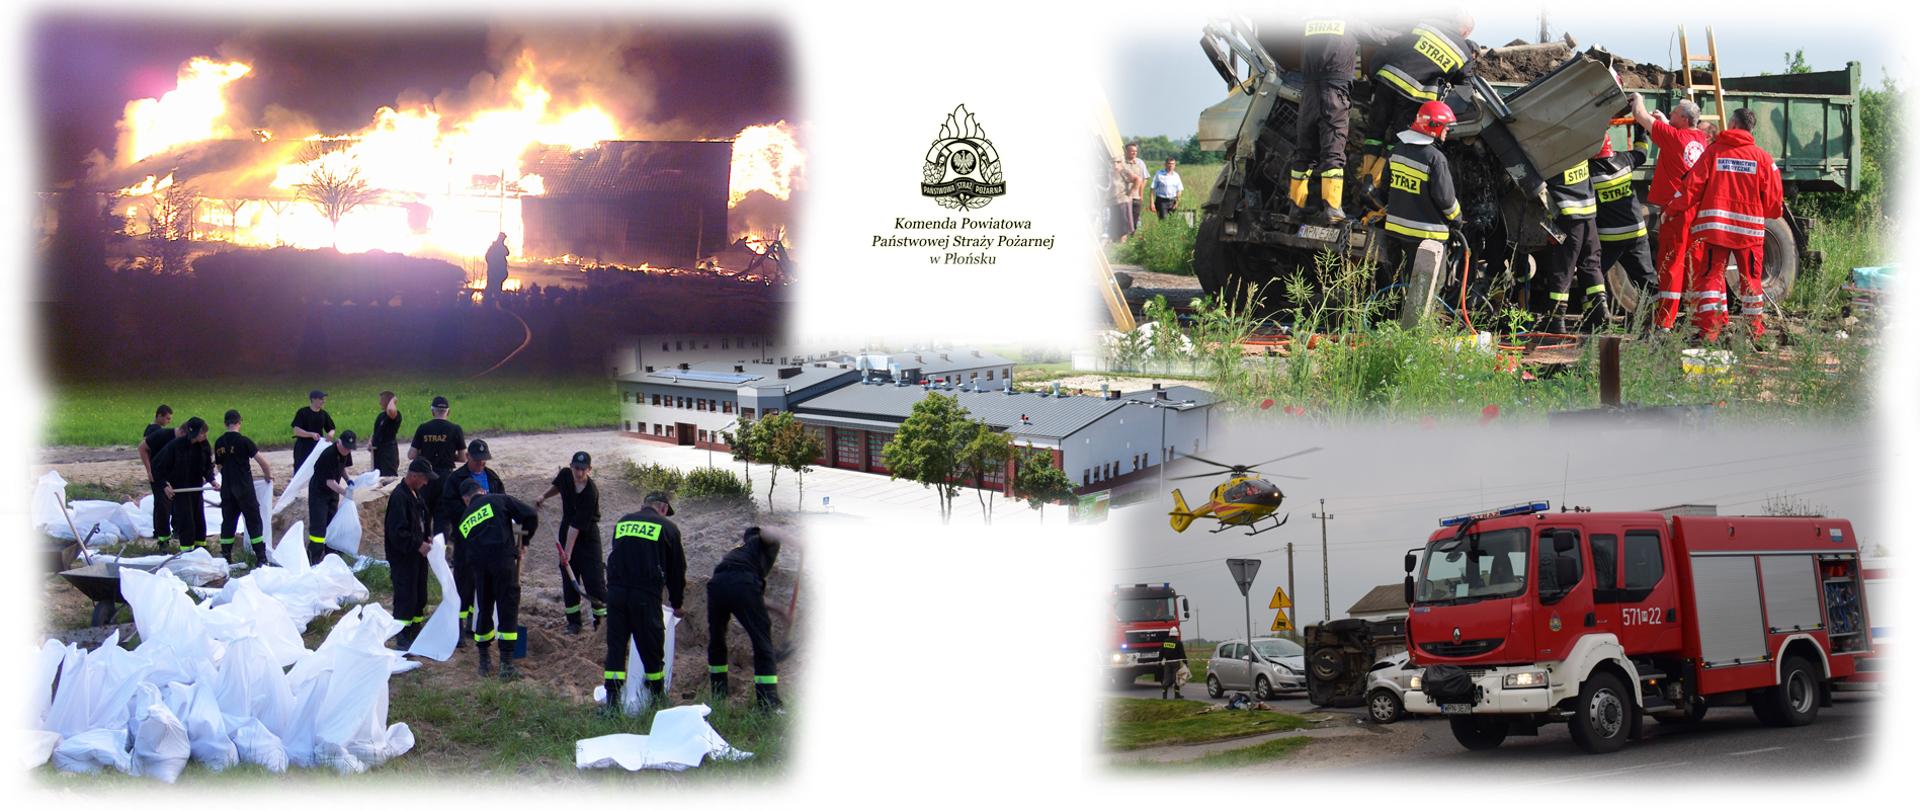 fotografia symboliczna złożona z 5 fotografii. u góry po lewej pożar budynków, pora nocna, z prawej strażacy usuwają skutki wypadku drogowego, na dole z lewej strażacy prowadzą działania przeciwpowodziowe, z prawej samochód pożarniczy na miejscu wypadku. w środku zdjęcia budynek komendy Powiatowej PSP w Płońsku.